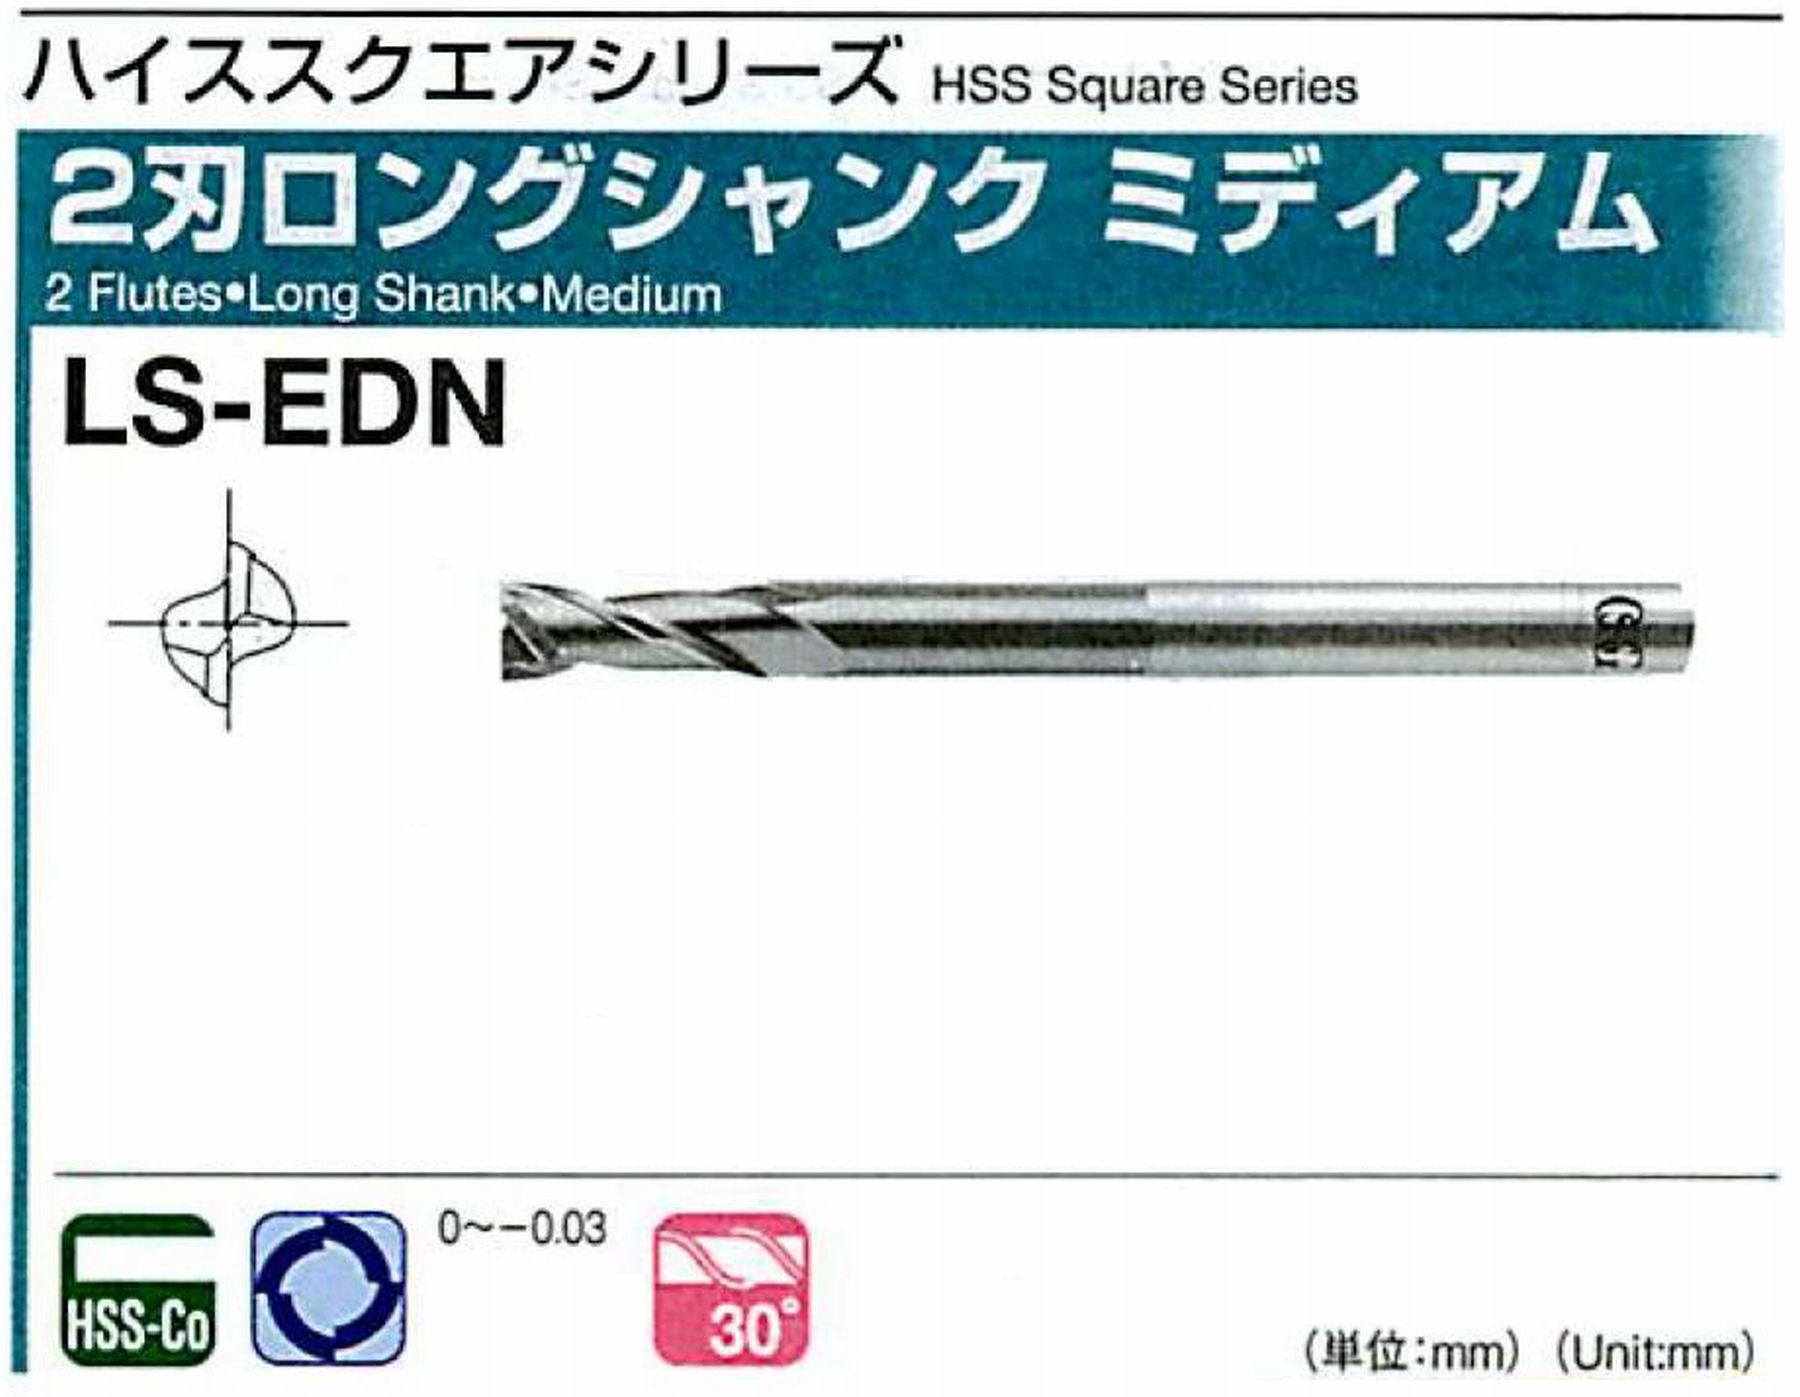 オーエスジー/OSG 2刃ロングシャンク ミディアム LS-EDN 外径10 全長125 刃長25 シャンク径10mm